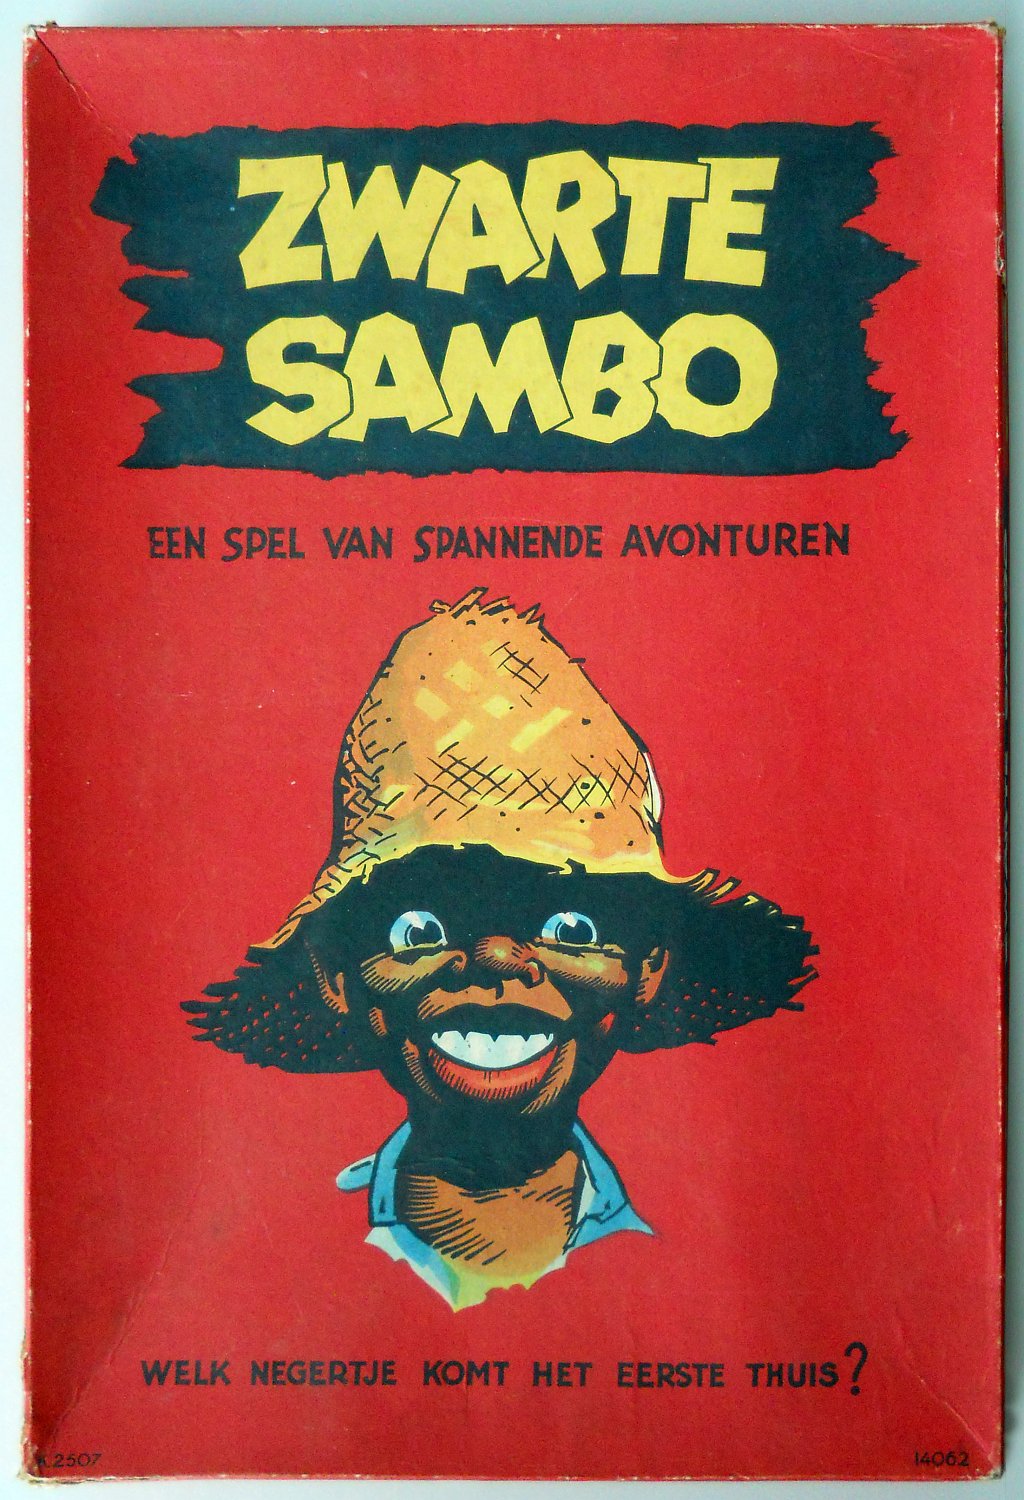 Zwarte Sambo: Een Spel van Spannende Avonturen